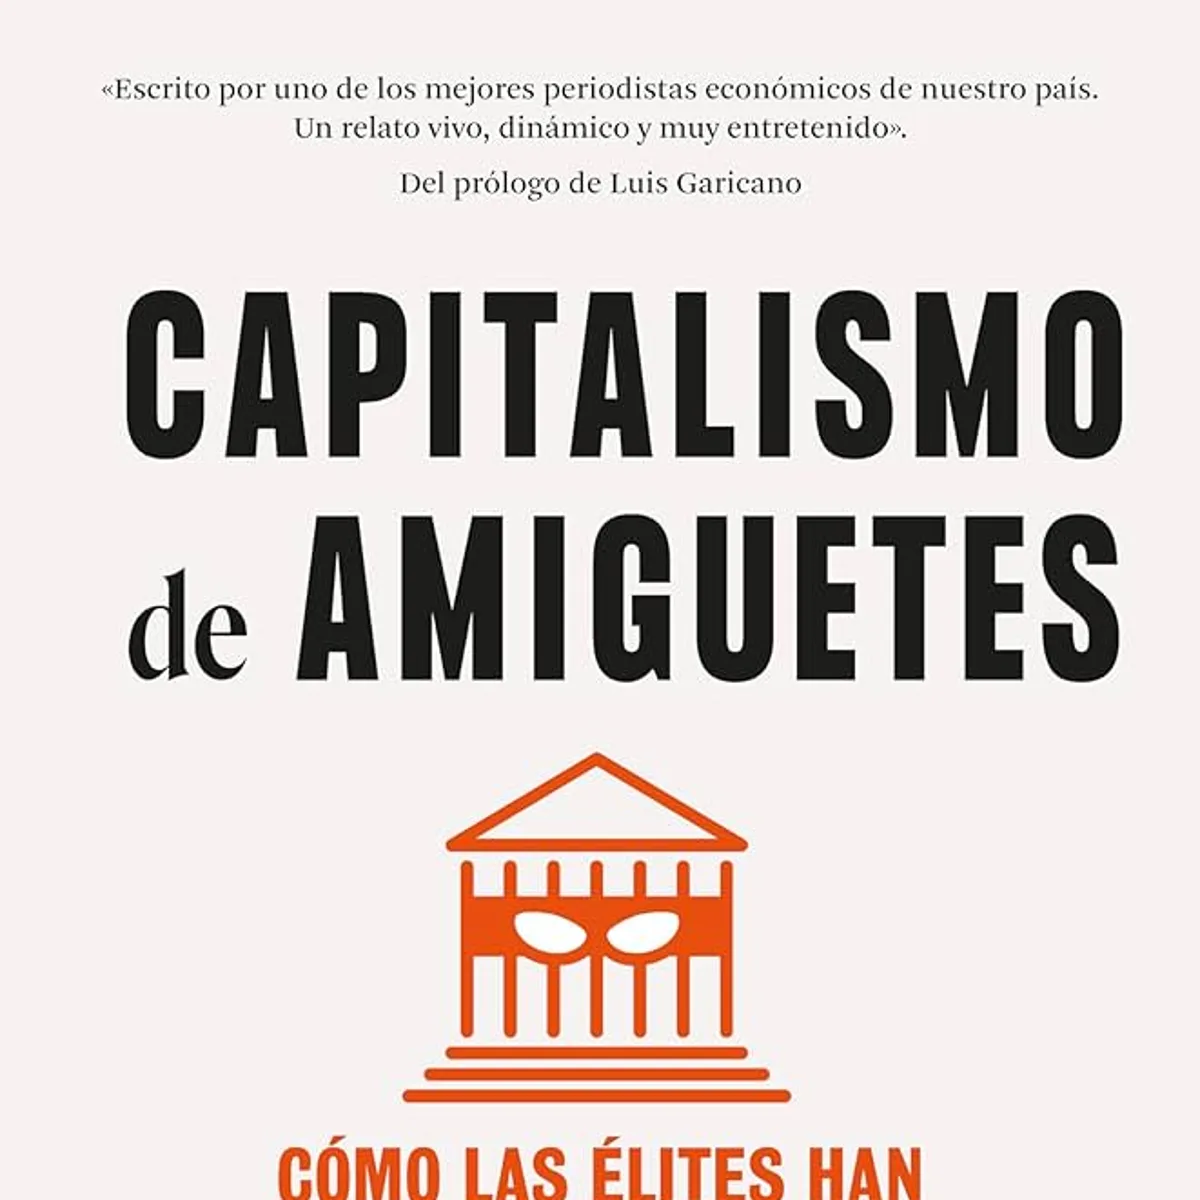 Capitalismo de amiguetes. Cómo las élites han manipulado el poder político  eBook : Sánchez, Carlos: : Libros